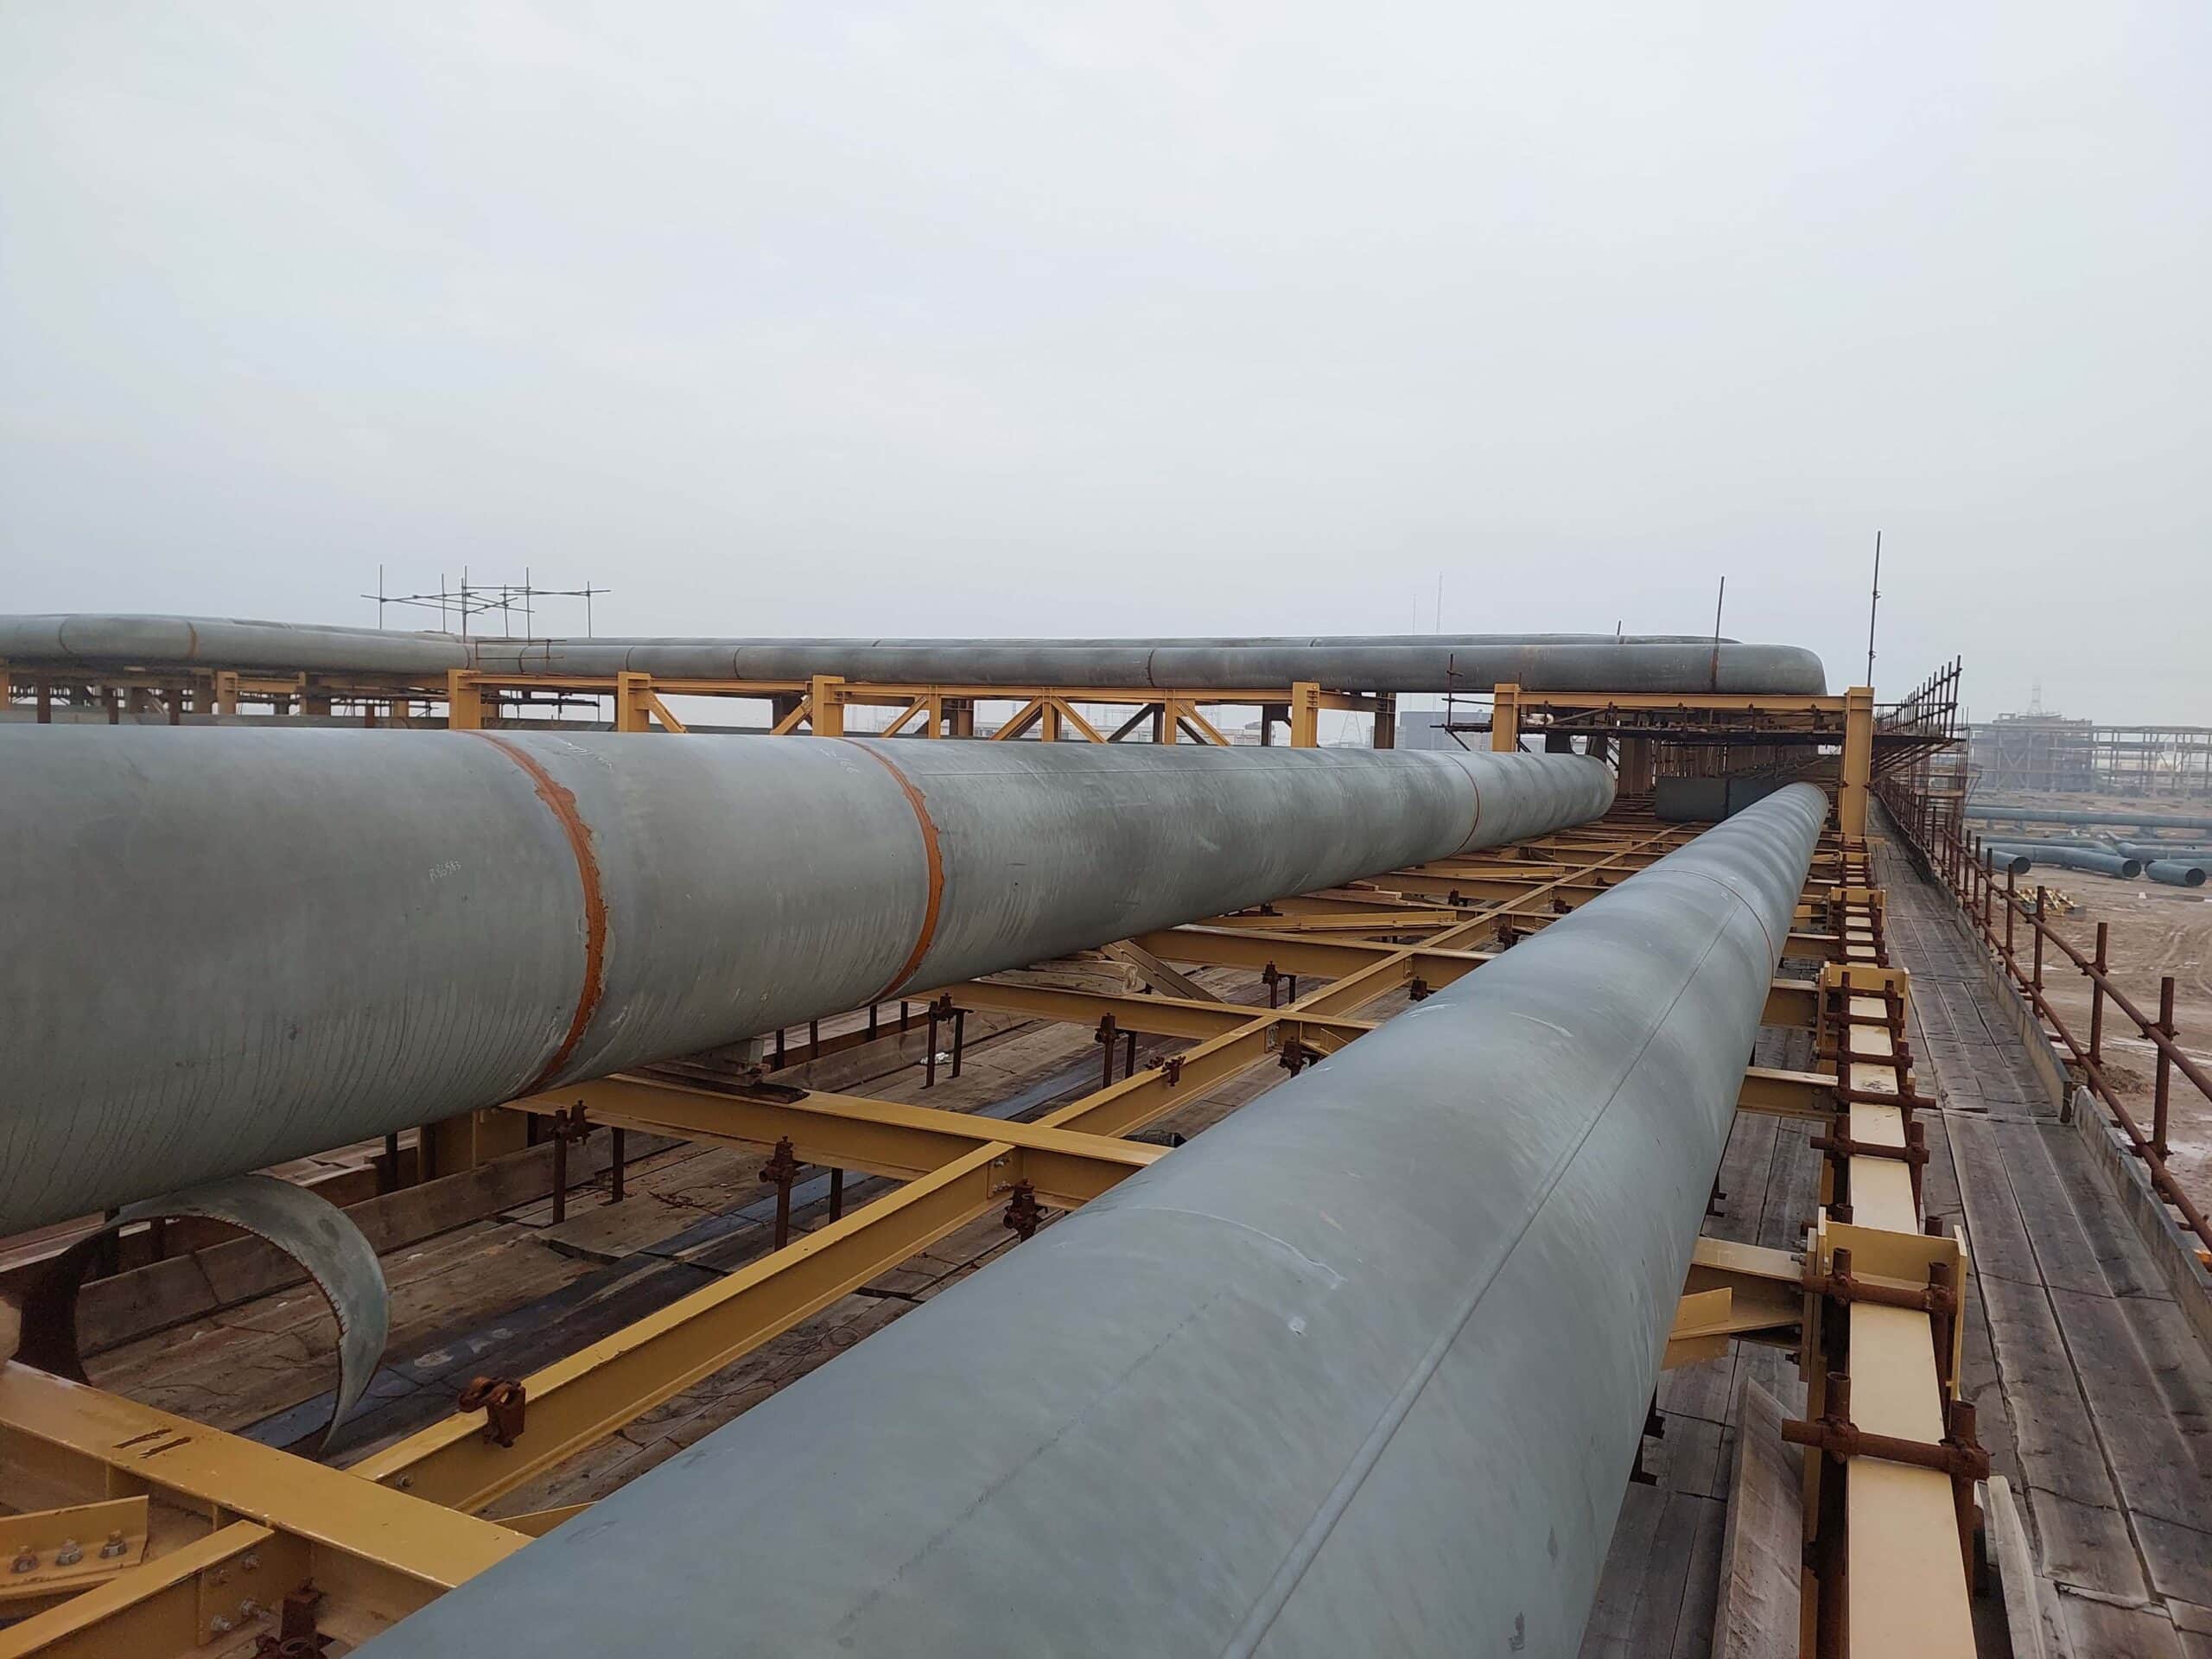 پروژه احداث واحد فرآورش مرکزی (CTEP) ـ طرح توسعه میدان نفتی آزادگان جنوبی ـ فاز یک